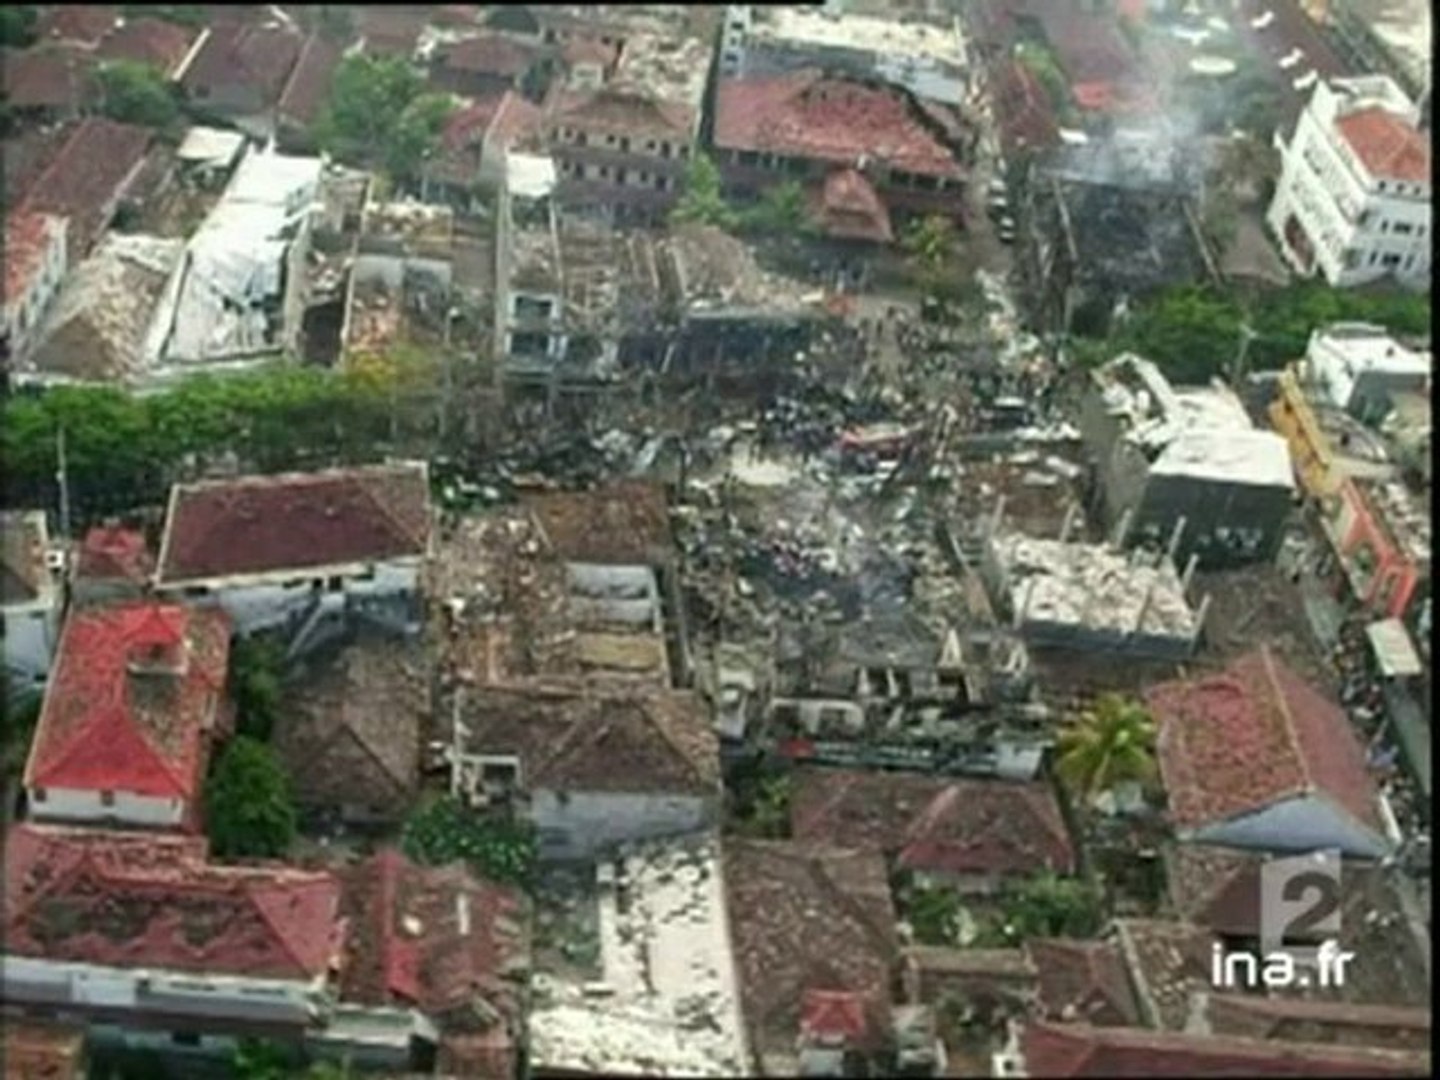 Situation à Bali au lendemain de l'attentat] - Vidéo Dailymotion